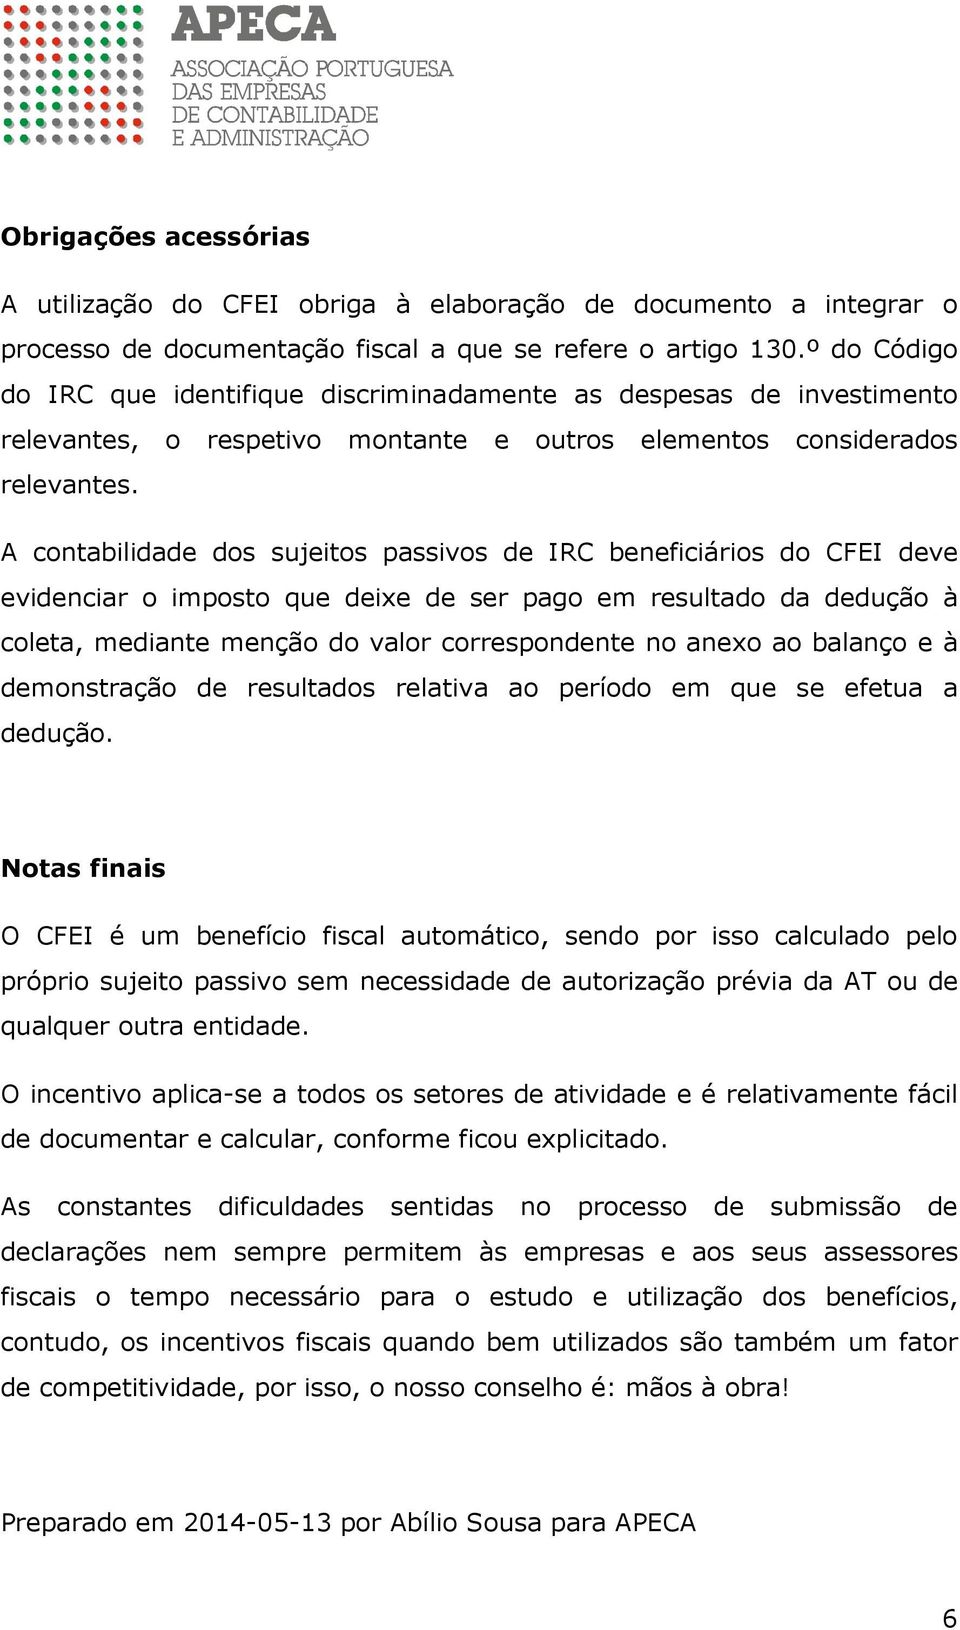 A contabilidade dos sujeitos passivos de IRC beneficiários do CFEI deve evidenciar o imposto que deixe de ser pago em resultado da dedução à coleta, mediante menção do valor correspondente no anexo